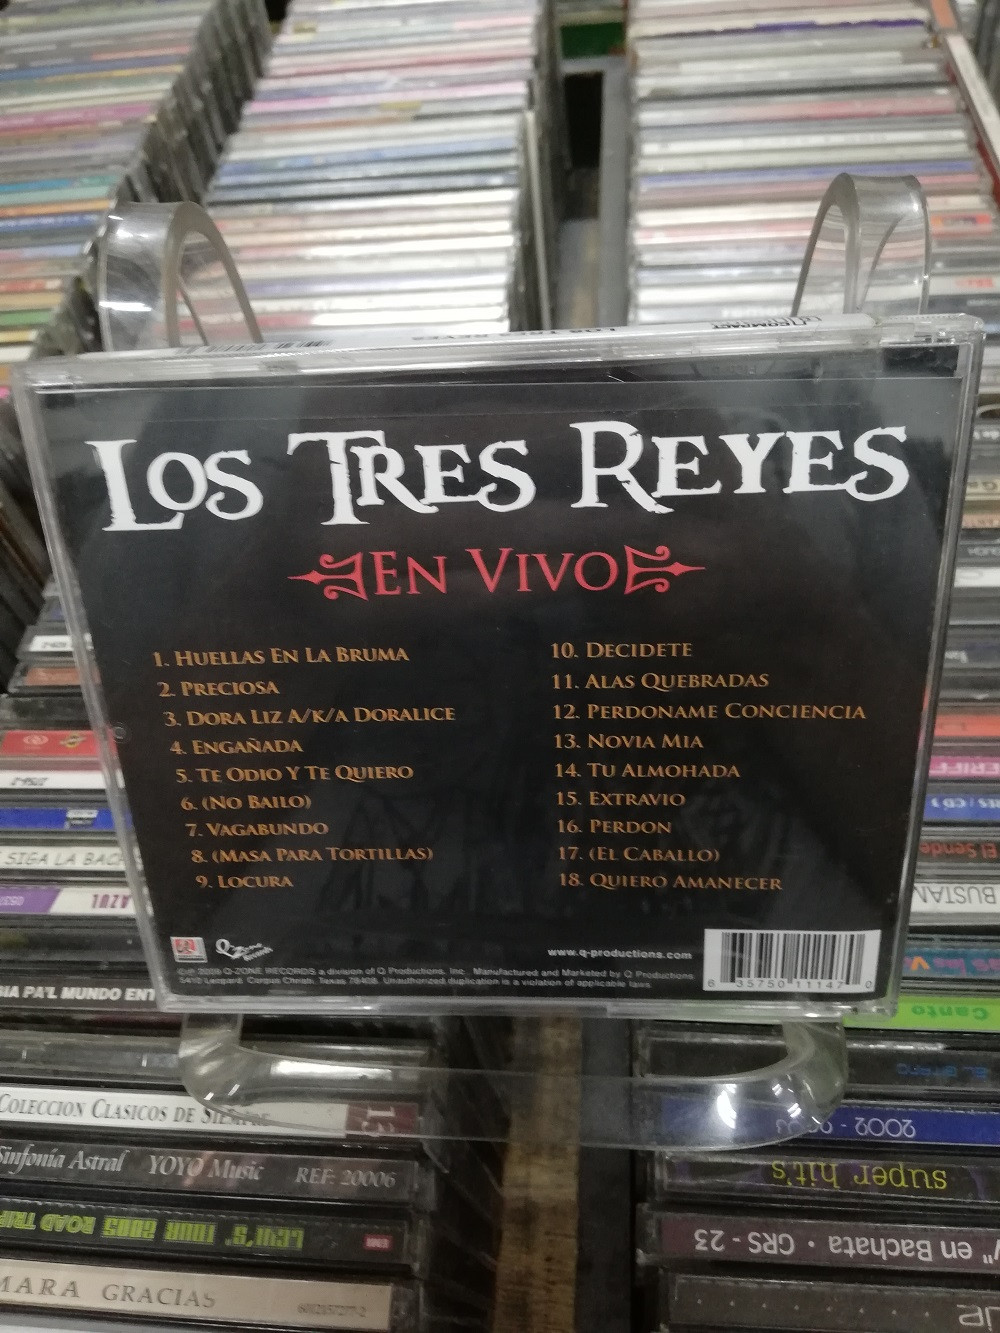 Imagen CD  LOS TRES REYES - EN VIVO 2